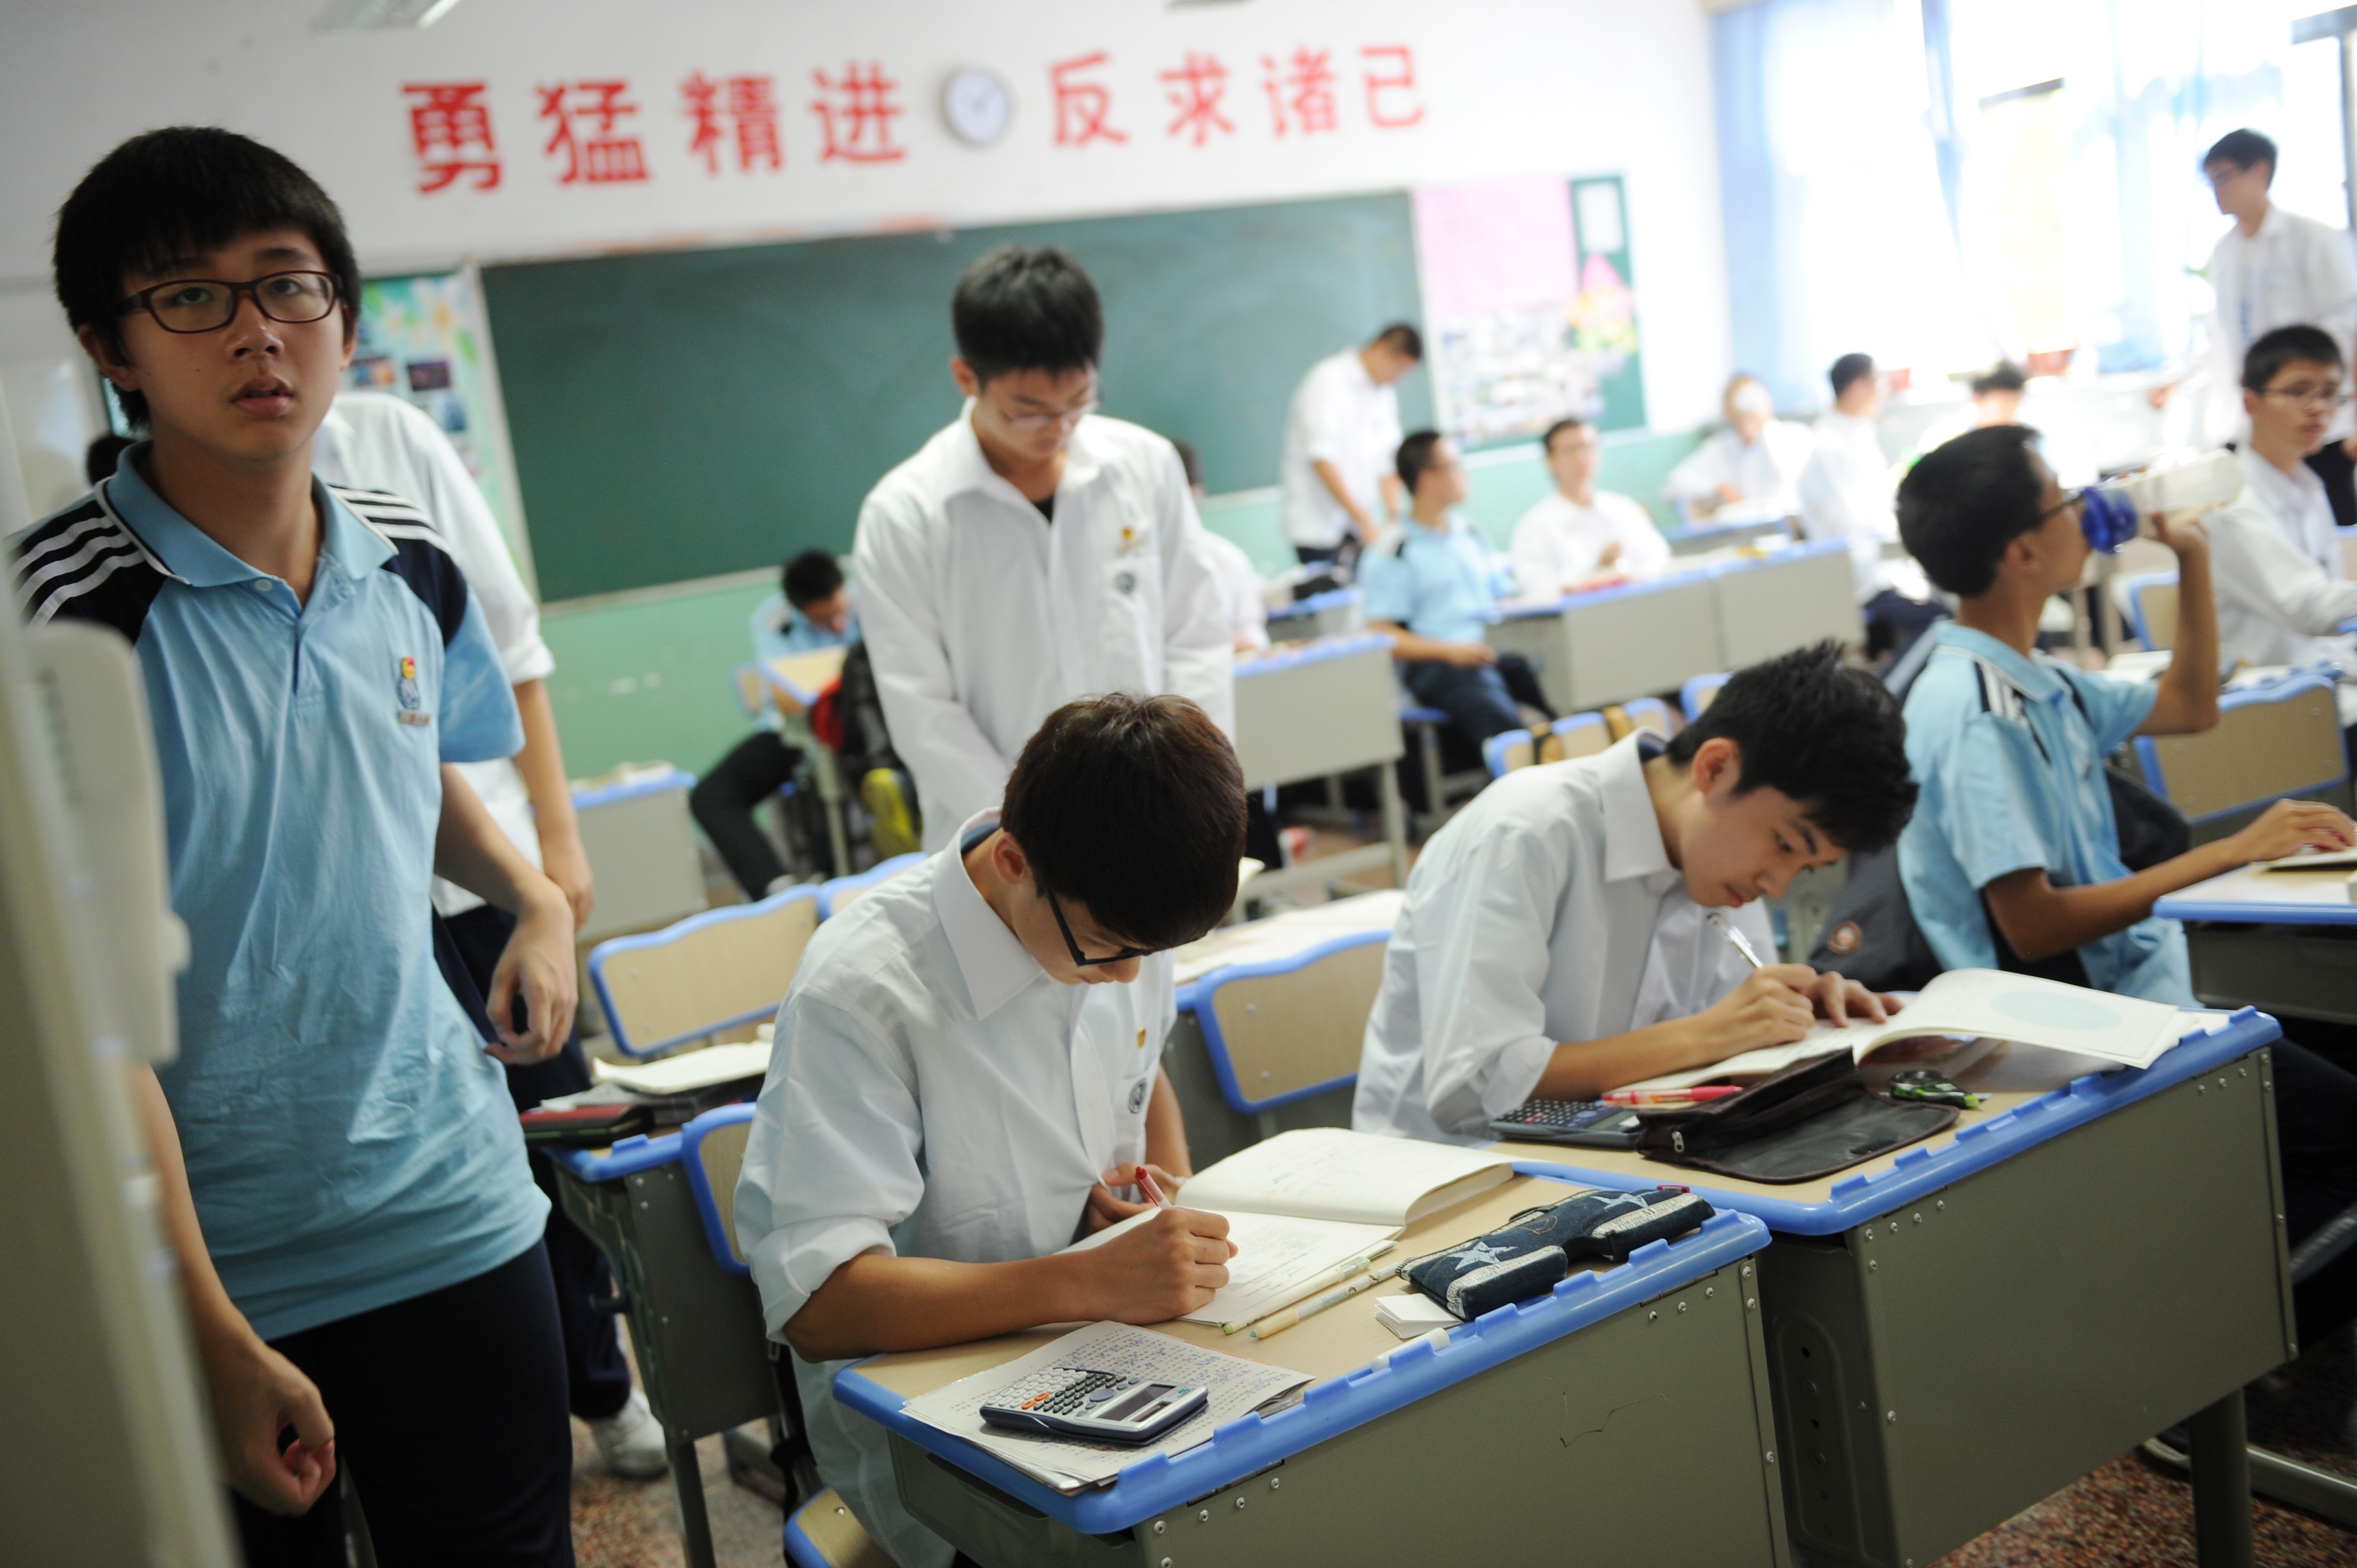 В школе китайский изучает 60 учащихся. Среднее образование в Китае. Старшая школа в Китае. Китайское образование старшая школа. Китайские ученики.